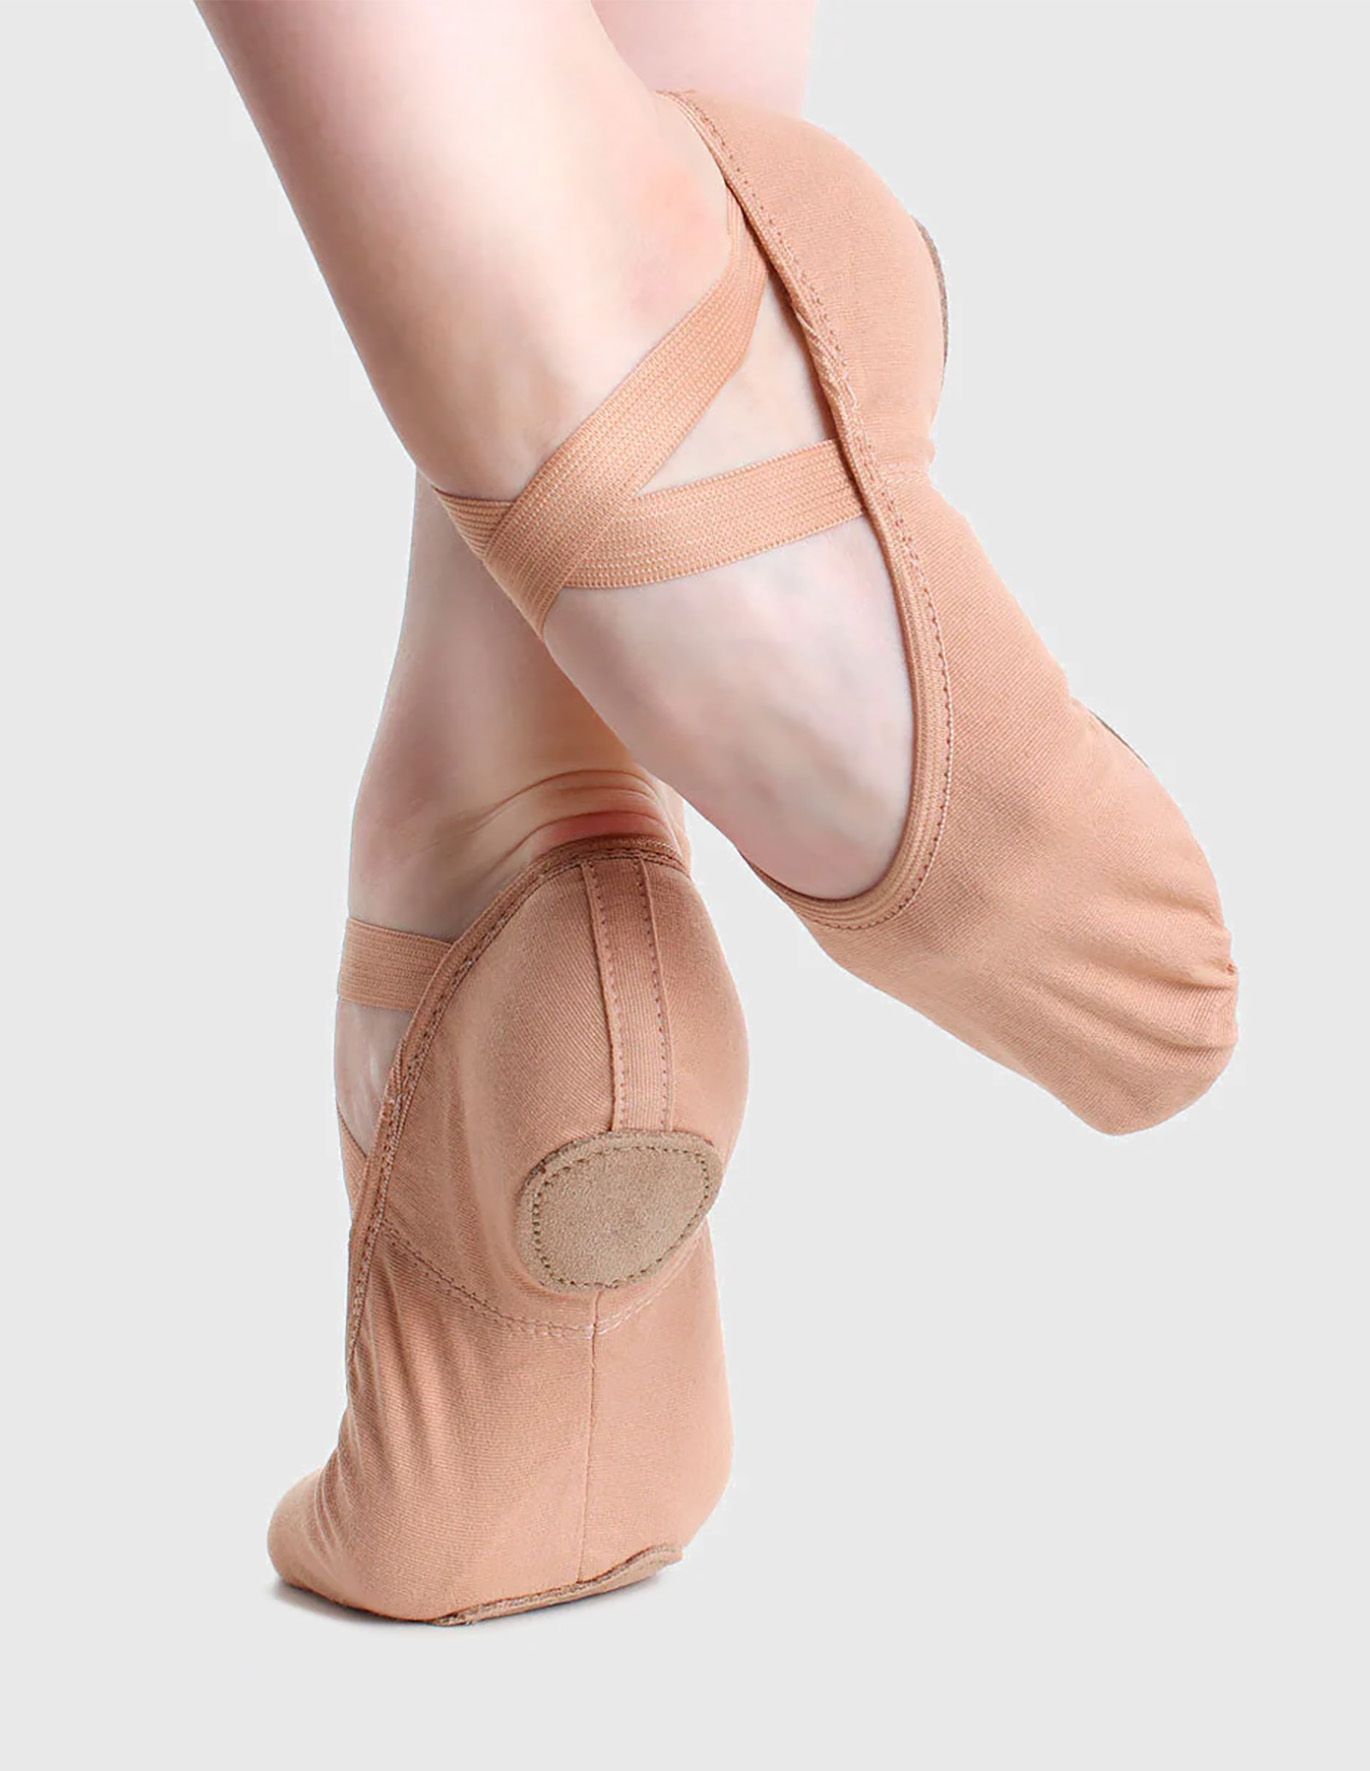 Split Sole 4-way Stretch Canvas Professional Ballet Shoes